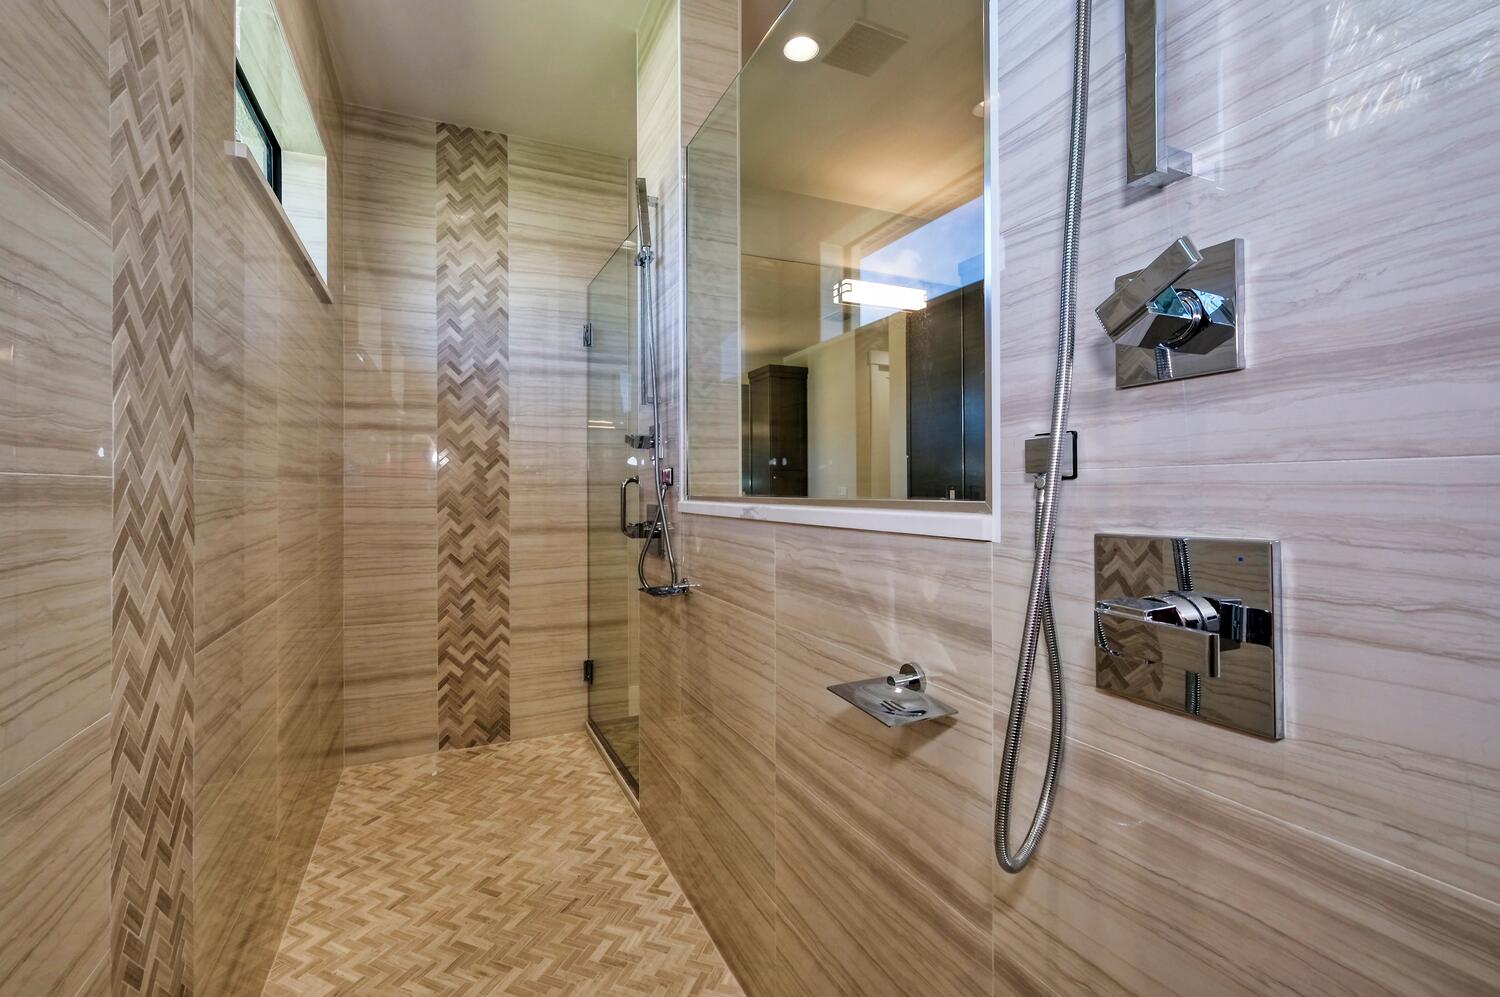 Bild der Dusche im Hauptbadezimmer des Neubaumodells Serenity